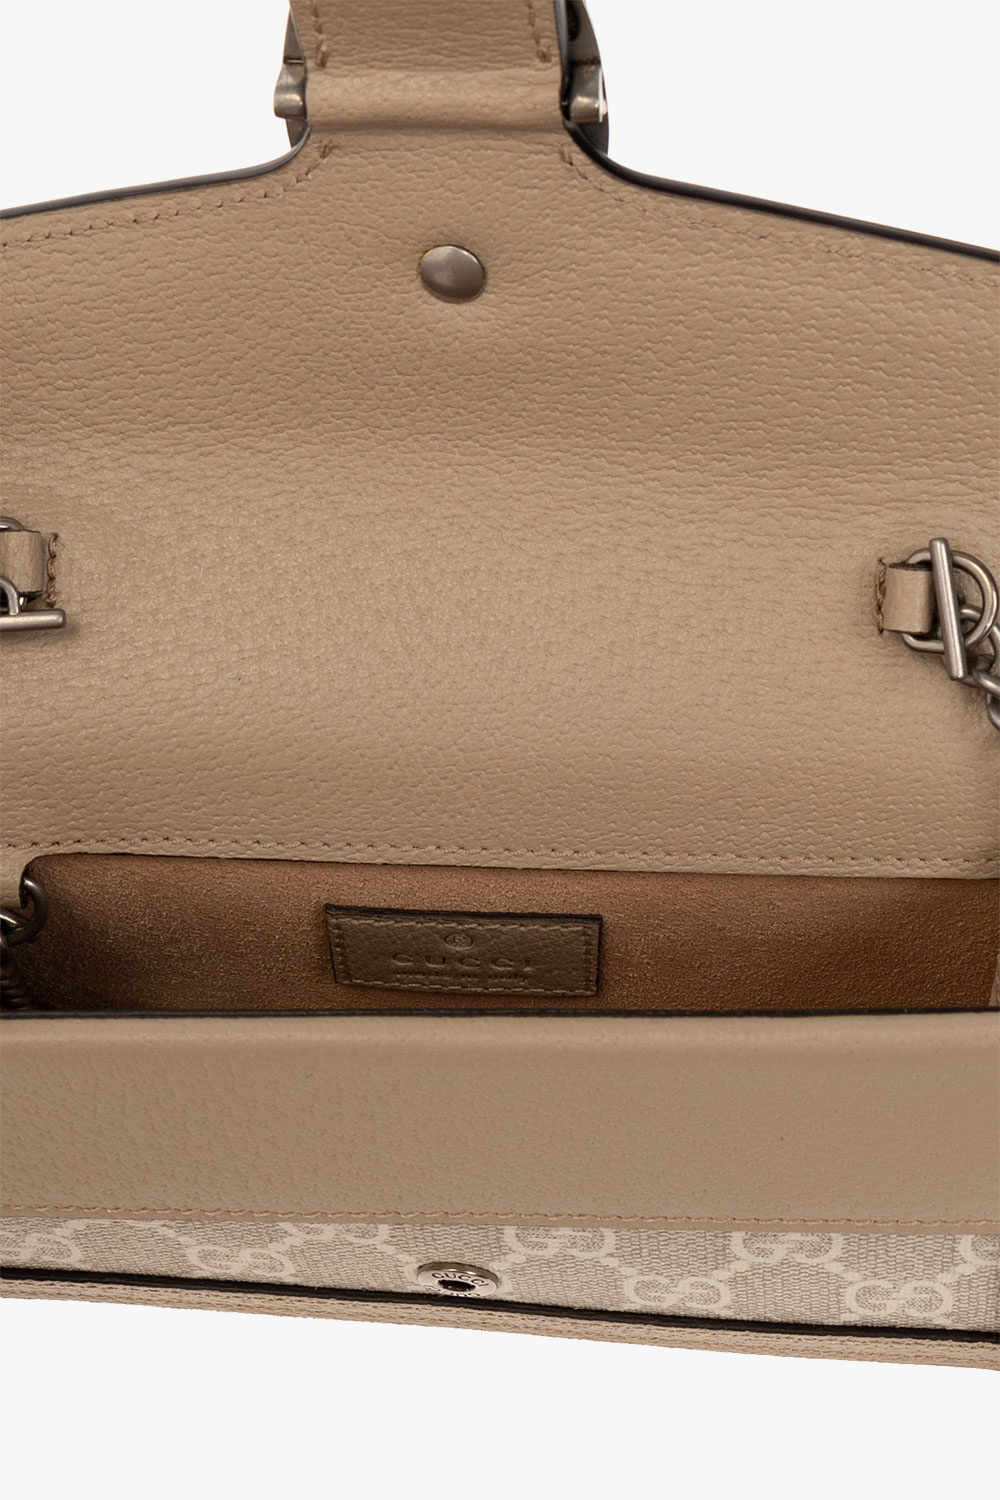 Gucci 'Dionysus Super Mini' shoulder bag, Women's Bags